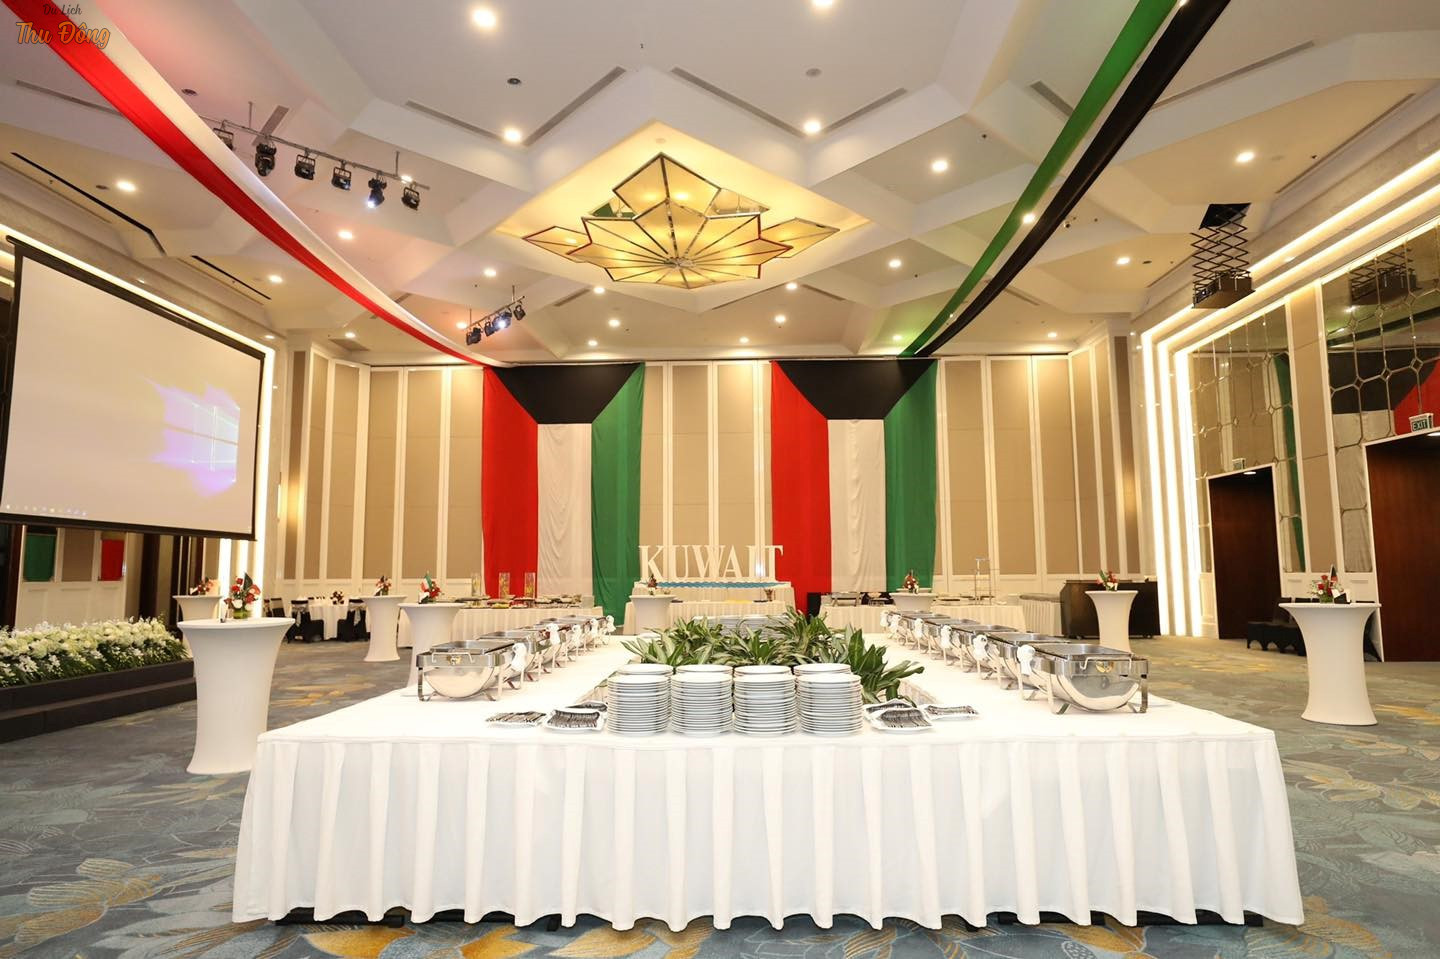 Trung tâm hội nghị của Meliá Hotel là một trong những địa điểm tổ chức sự kiện hàng đầu tại Việt Nam (Nguồn: Traveloka)